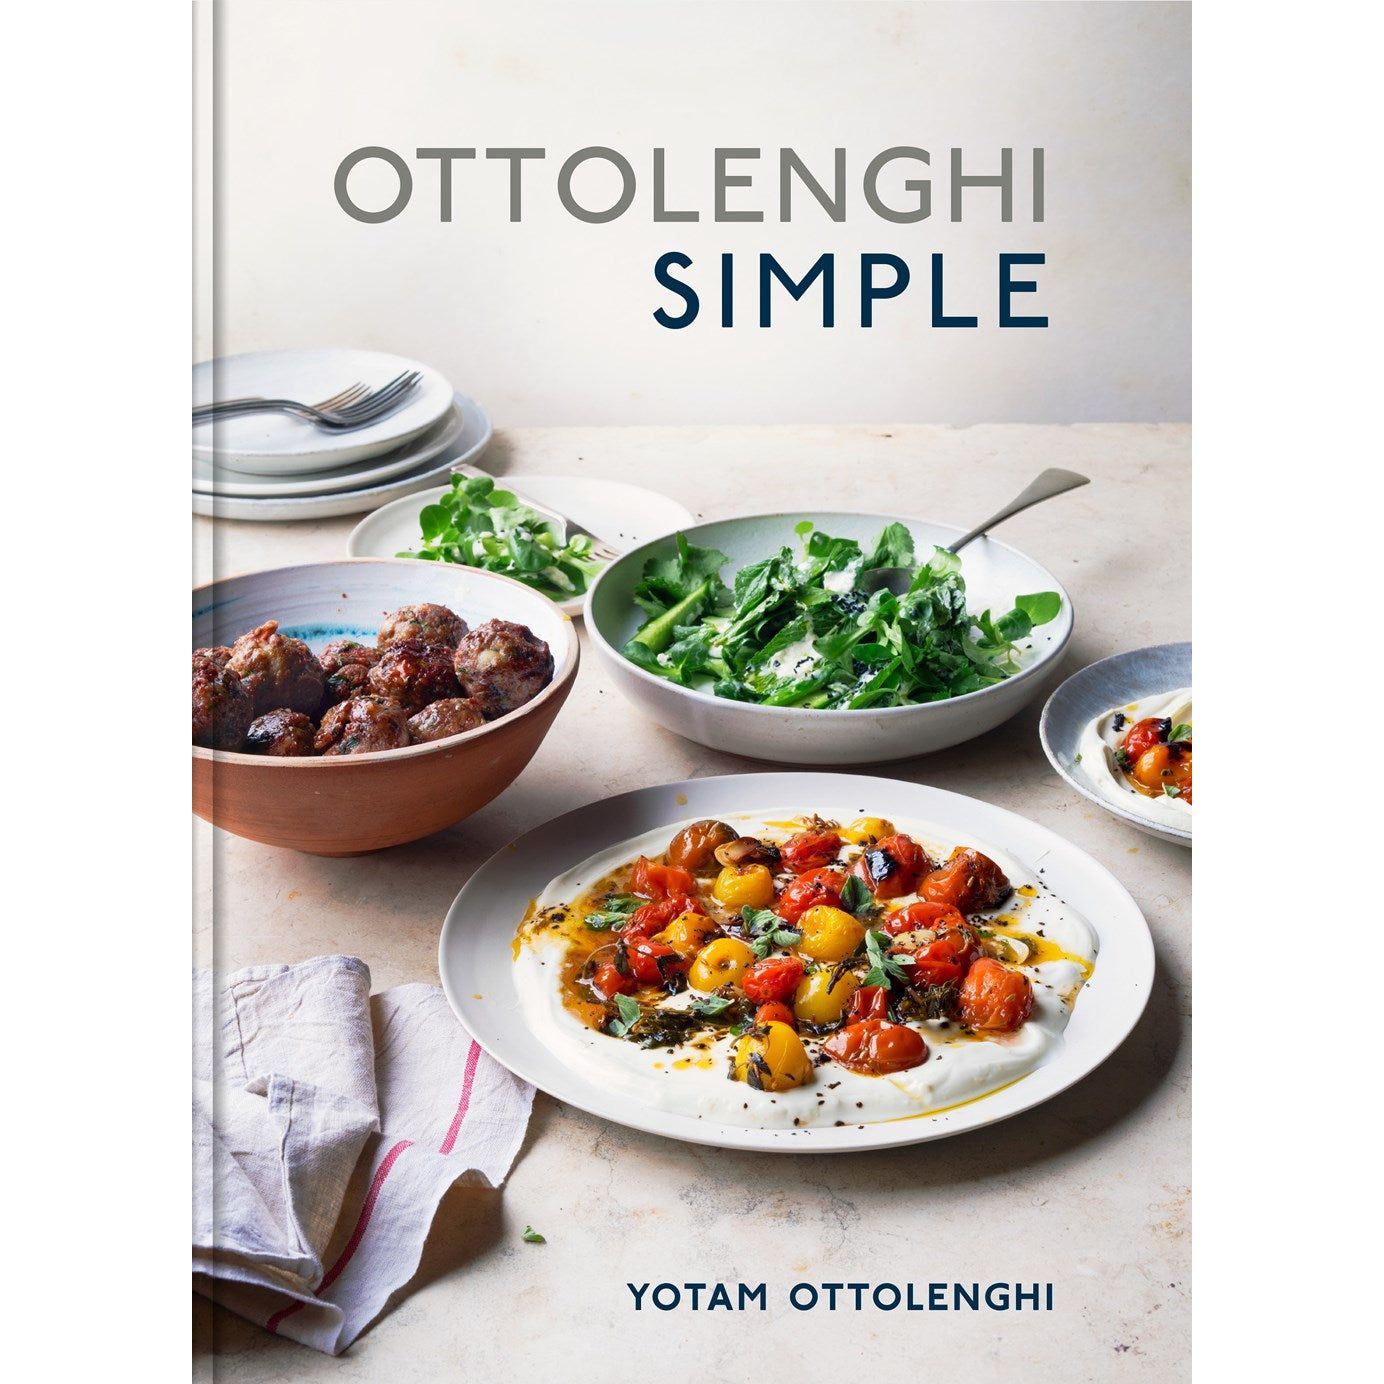 Ottolenghi Simple (Yotam Ottolenghi)